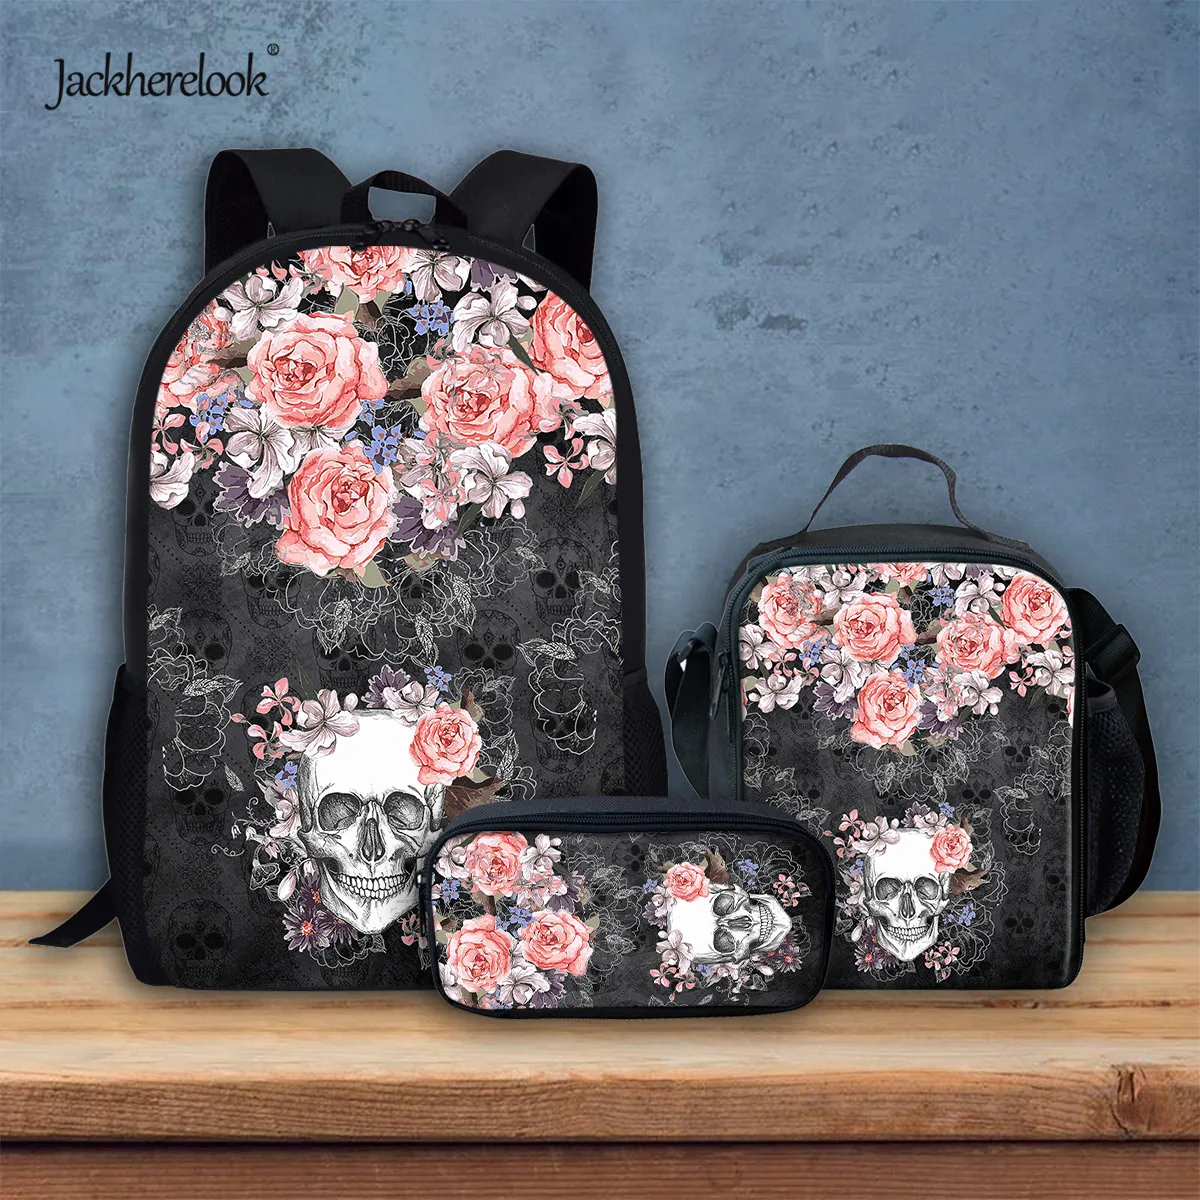 Jackherelook крутой школьный рюкзак с рисунком черепа розы наборы для девочек прочный ланч-карандаш школьные сумки 3 шт./компл. Mochila